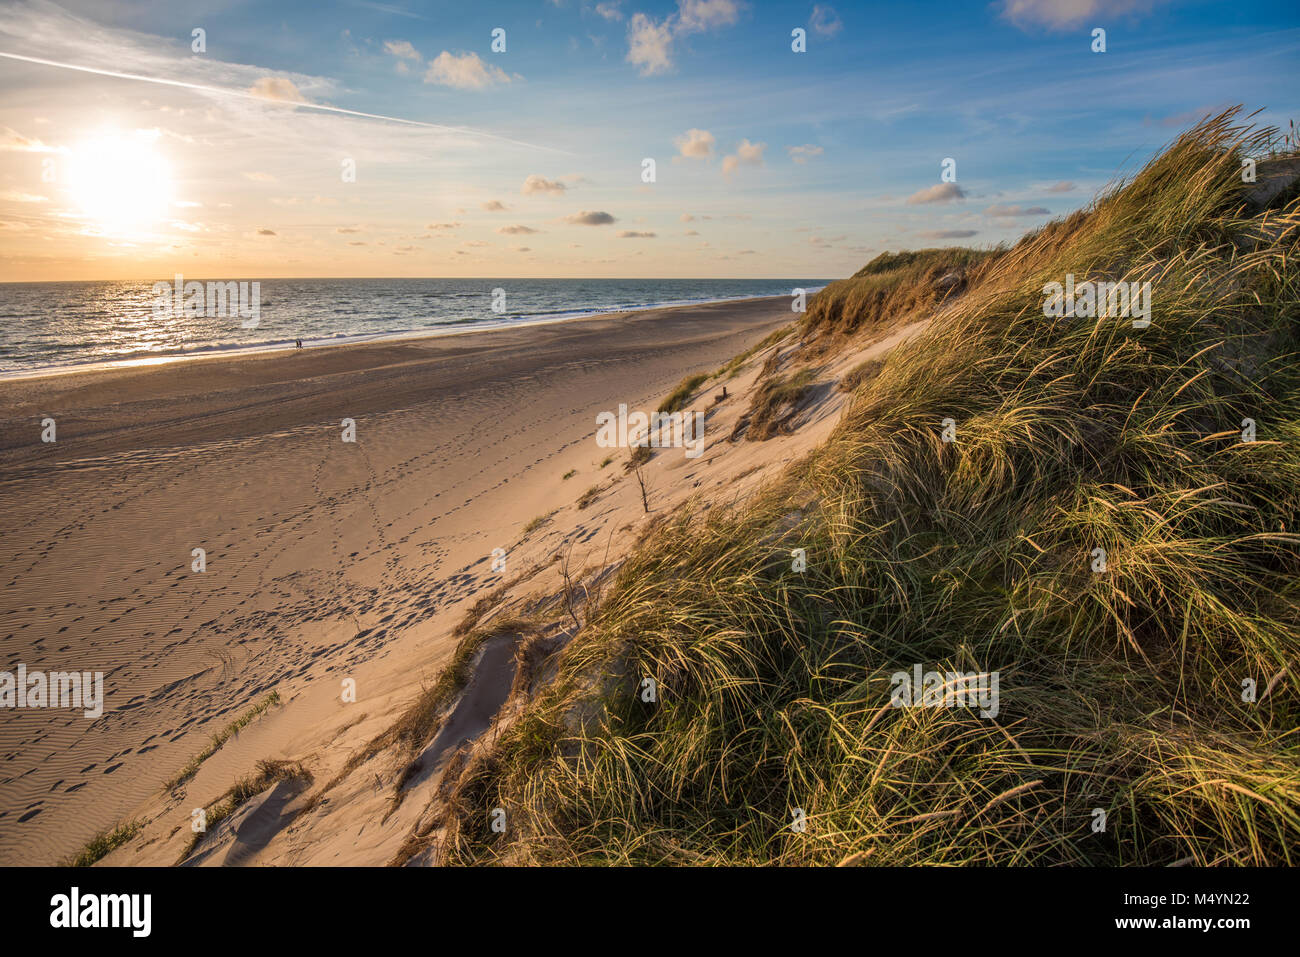 Spiaggia del mare del Nord, costa dello Jutland in Danimarca Foto Stock